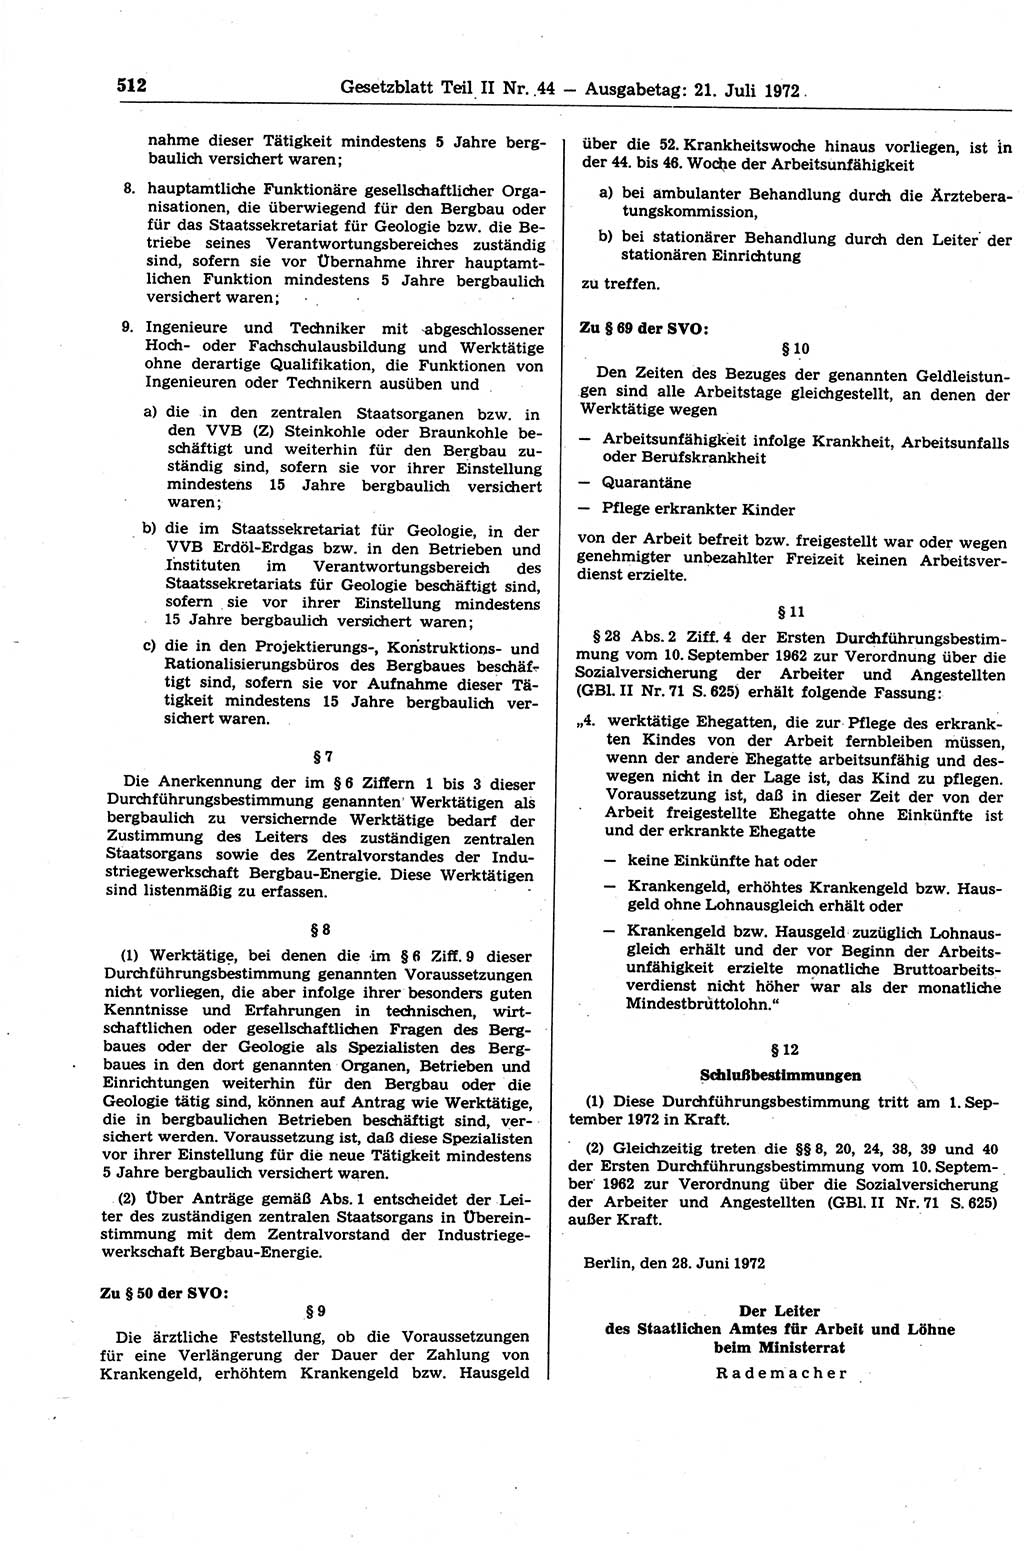 Gesetzblatt (GBl.) der Deutschen Demokratischen Republik (DDR) Teil ⅠⅠ 1972, Seite 512 (GBl. DDR ⅠⅠ 1972, S. 512)